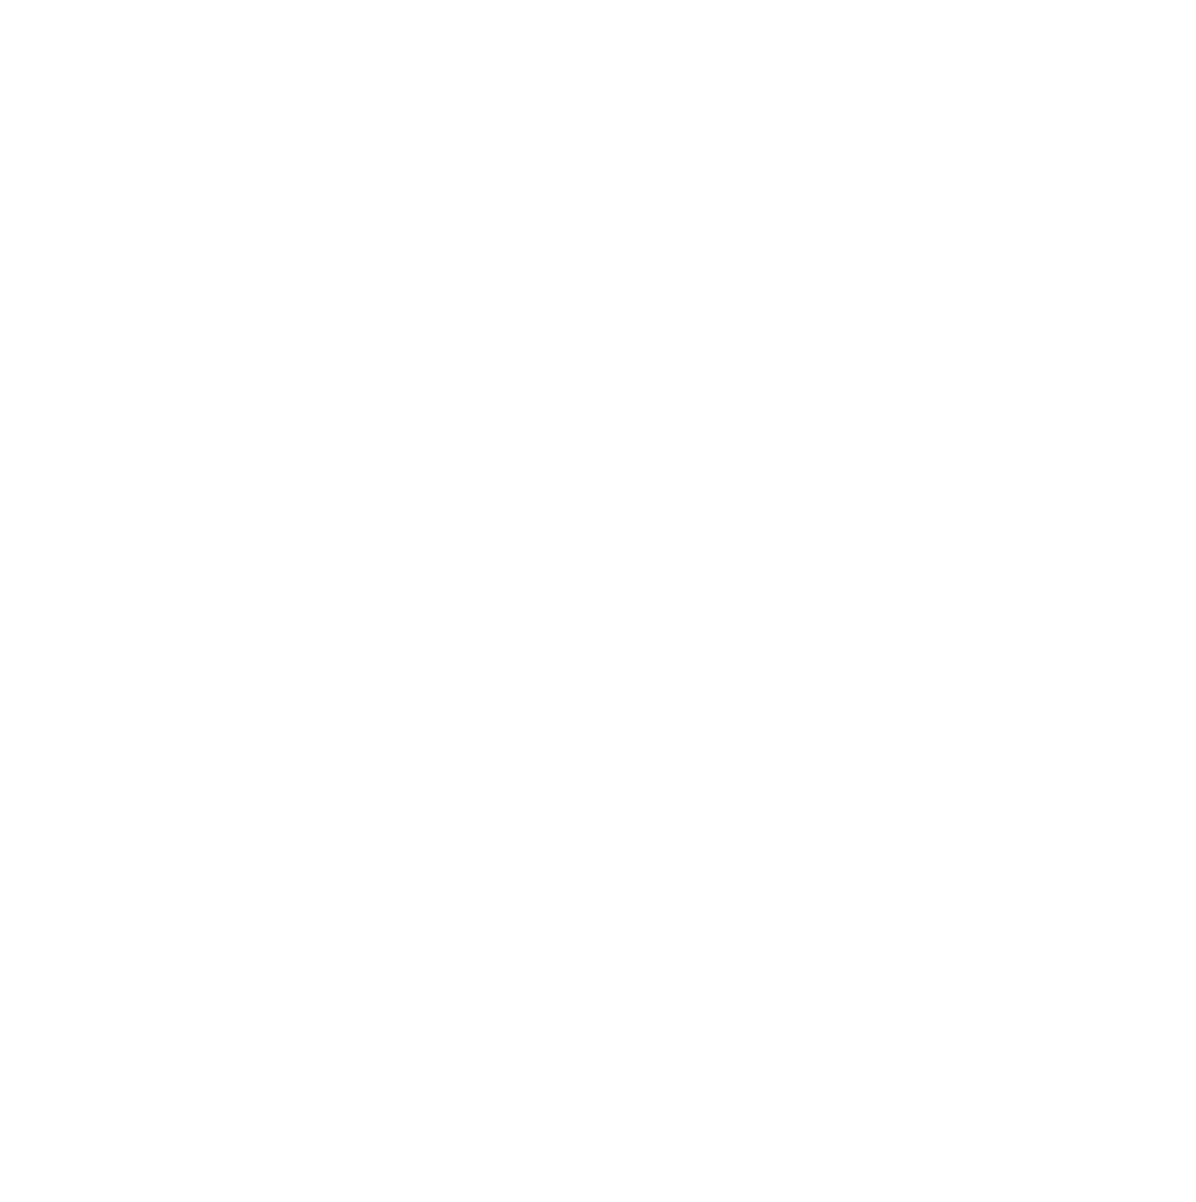 Inner branding Days 2020